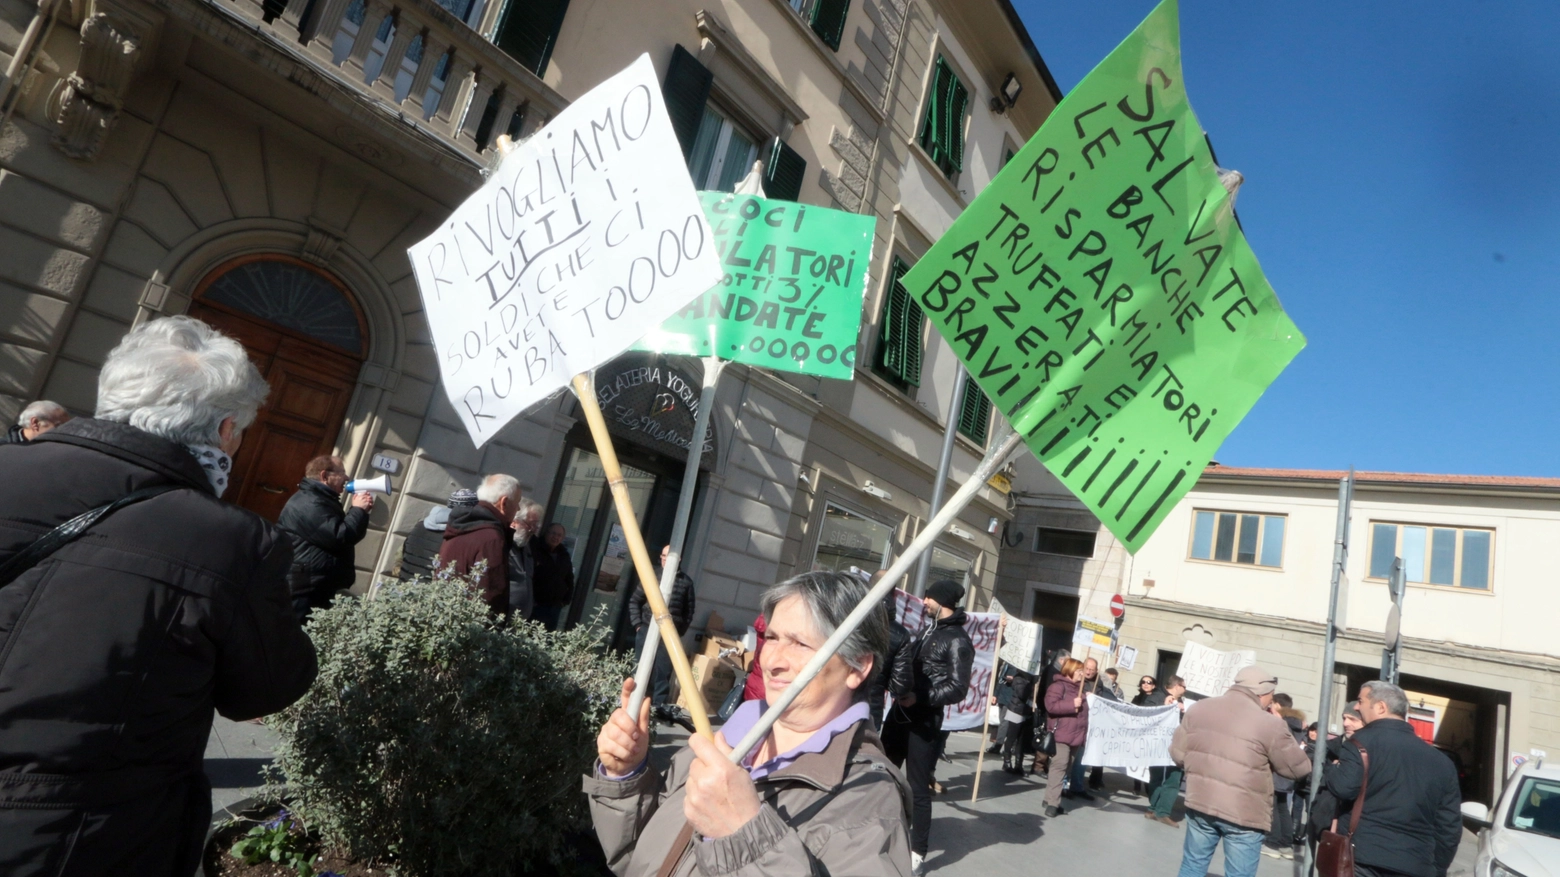 Manifestazione dei risparmiatori truffati da Banca Etruria. Foto Gianni Nucci/Fotocronache